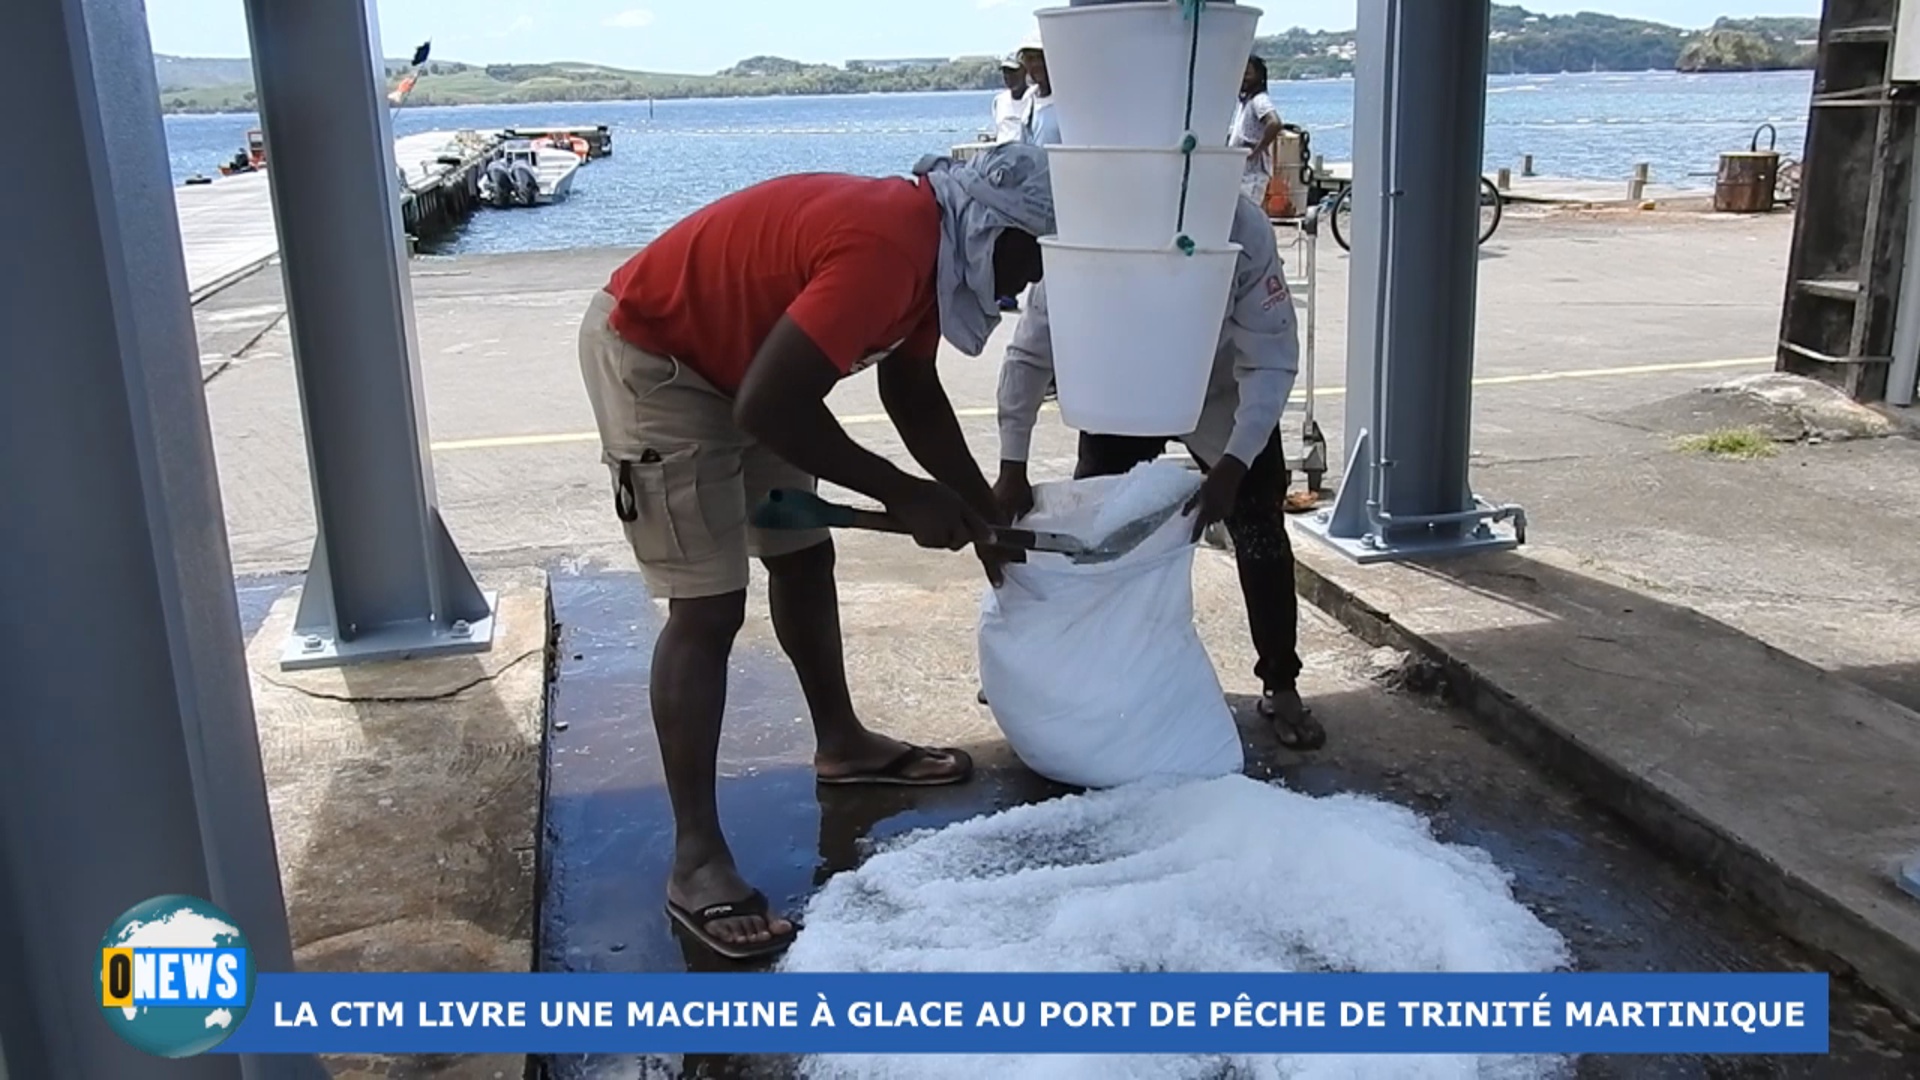 [Vidéo] Onews Martinique. Livraison d’une machine à glace au Port de Pêche de Trinité